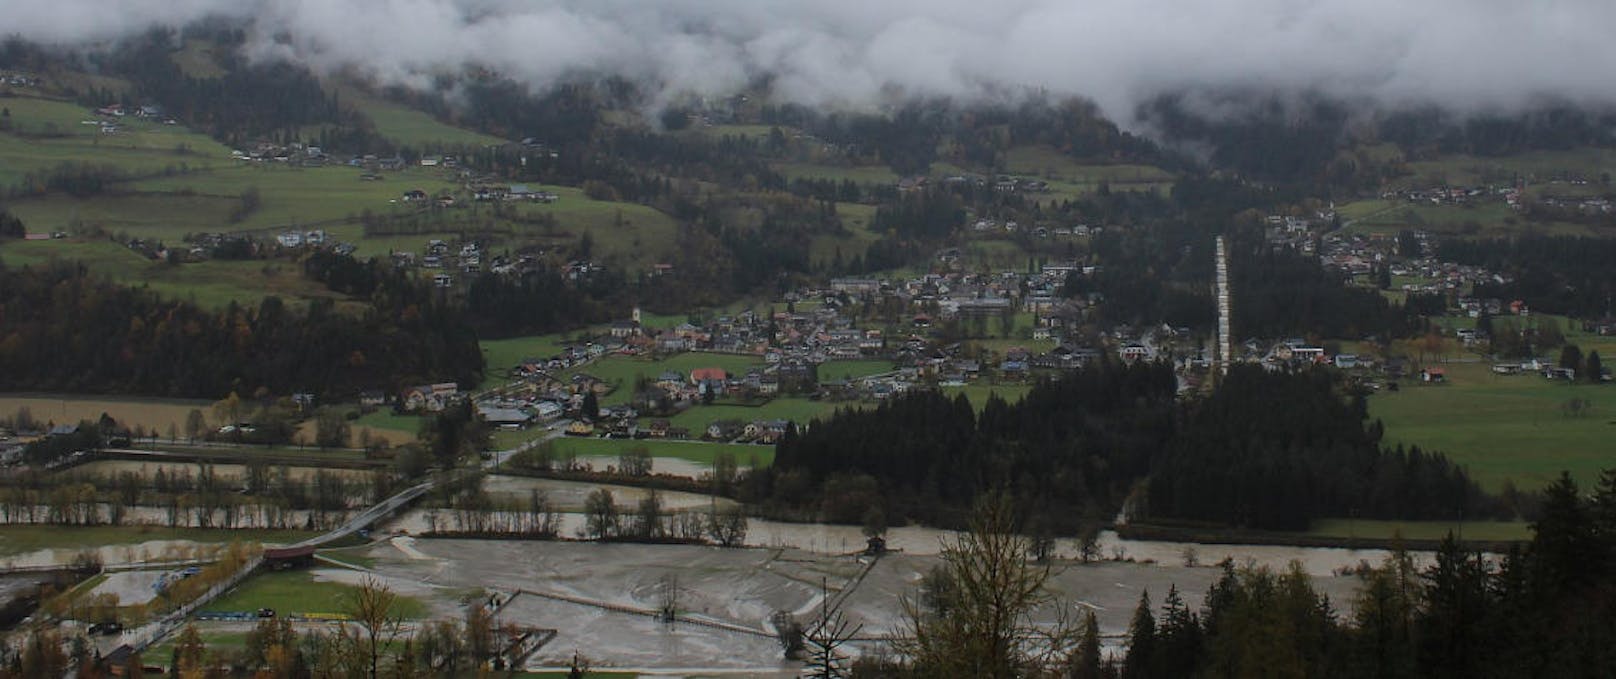 Das Bild der Webcam zeigt die aktuelle Lage in Dellach im Drautal ? das Landschaftsbild ist vom Hochwasser gezeichnet. (Quelle: Foto-Webcam.eu)